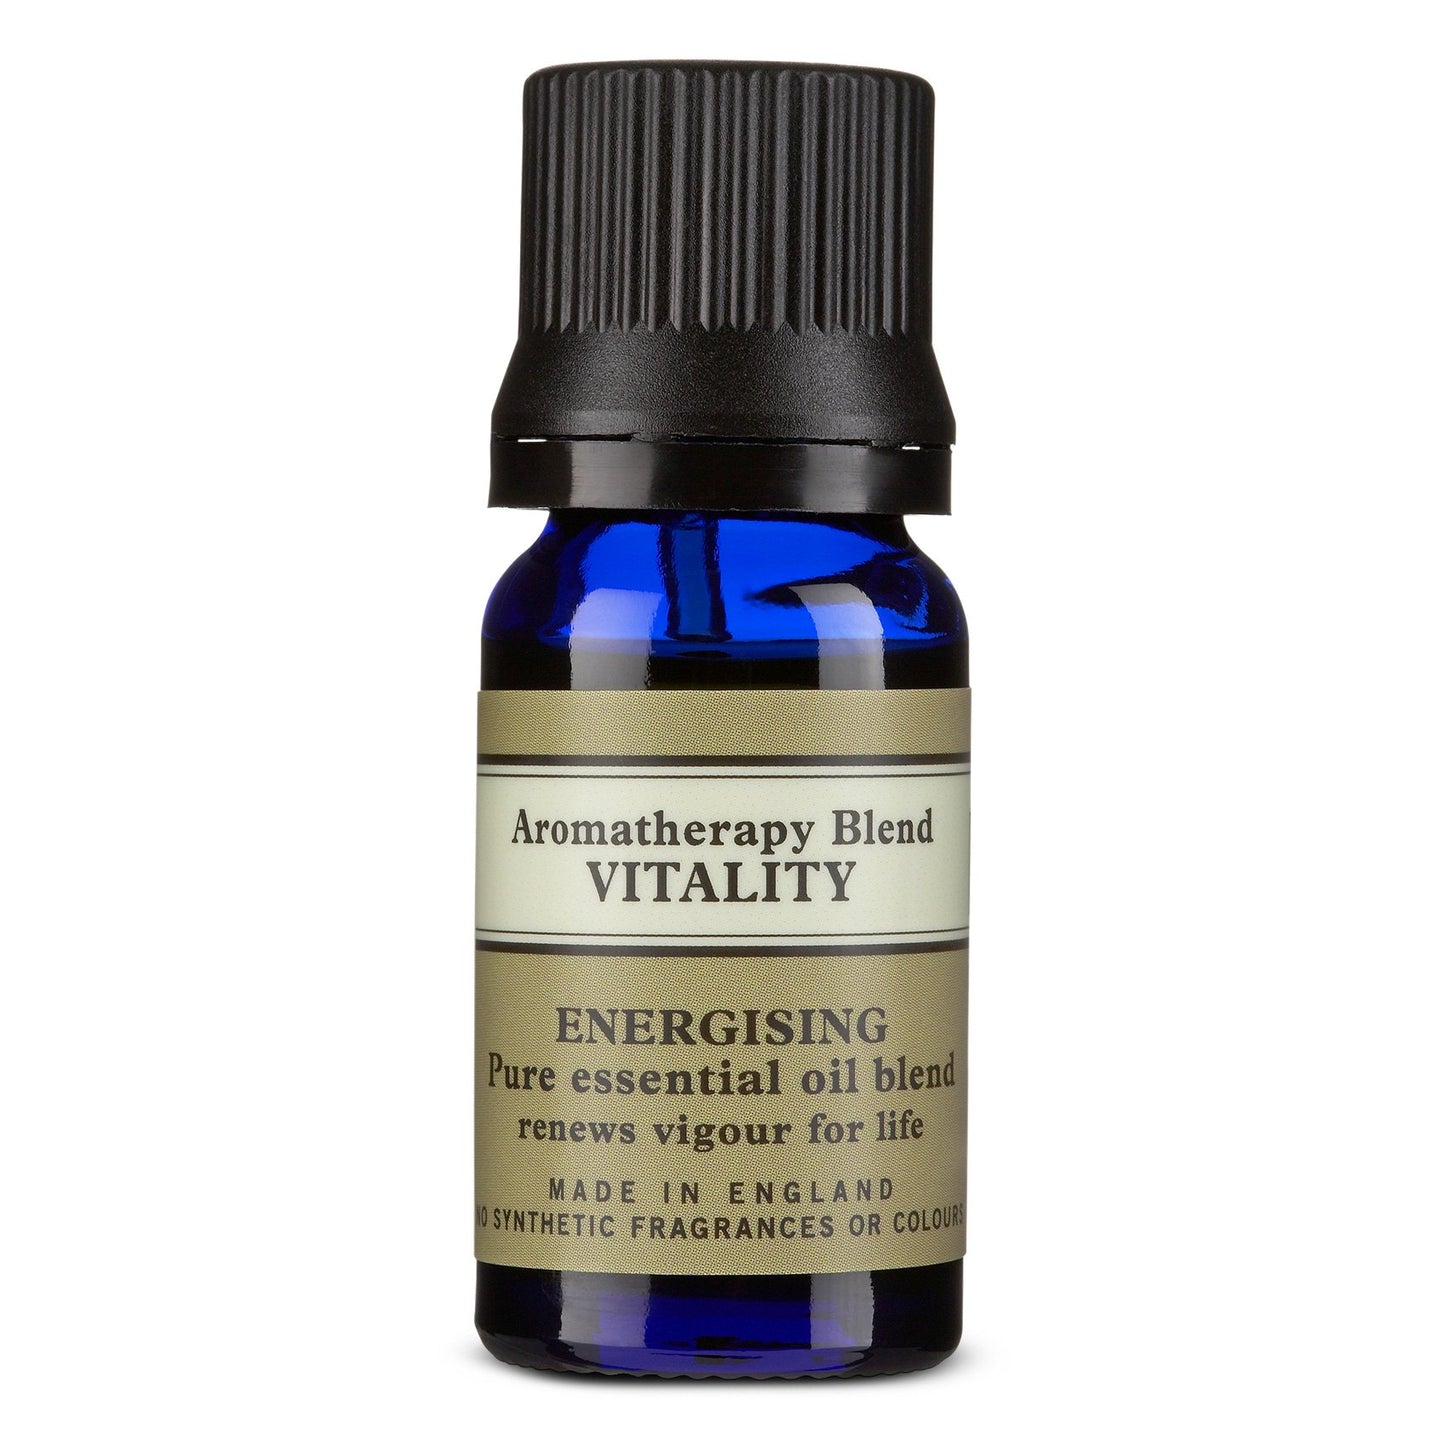 Aromatherapy Blend - Vitality